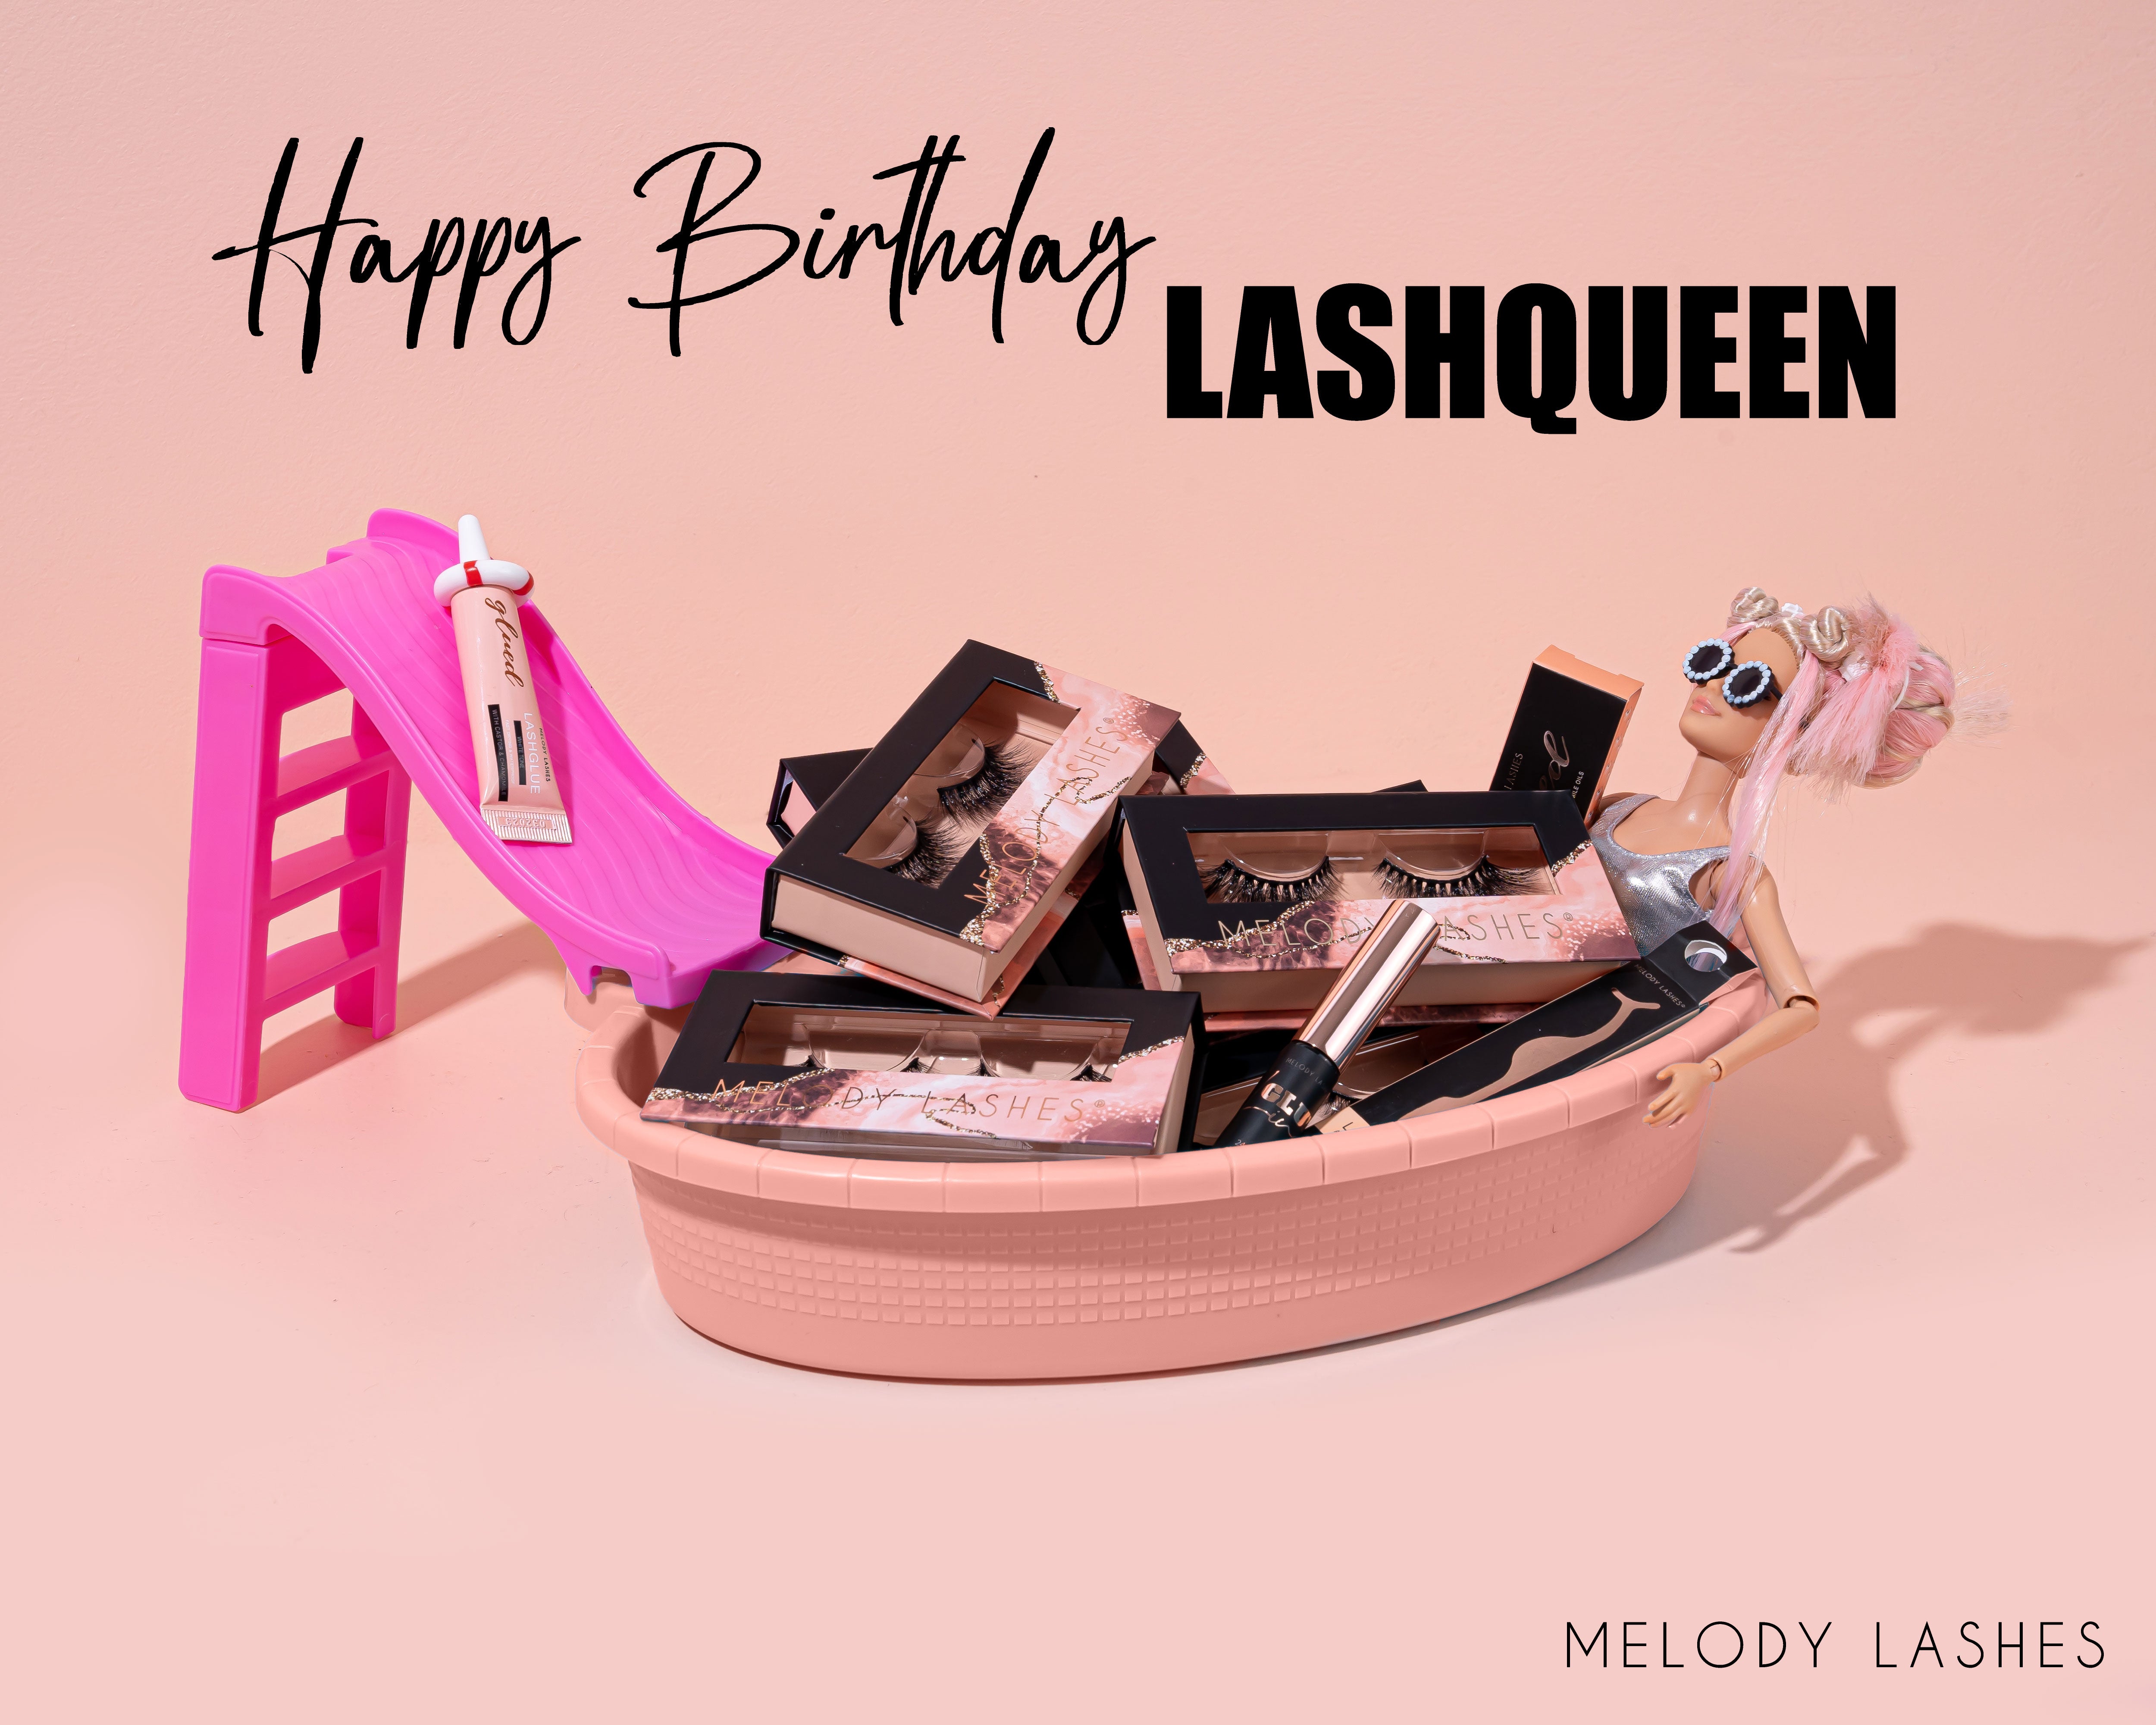 Happy Birthday Lashqueen